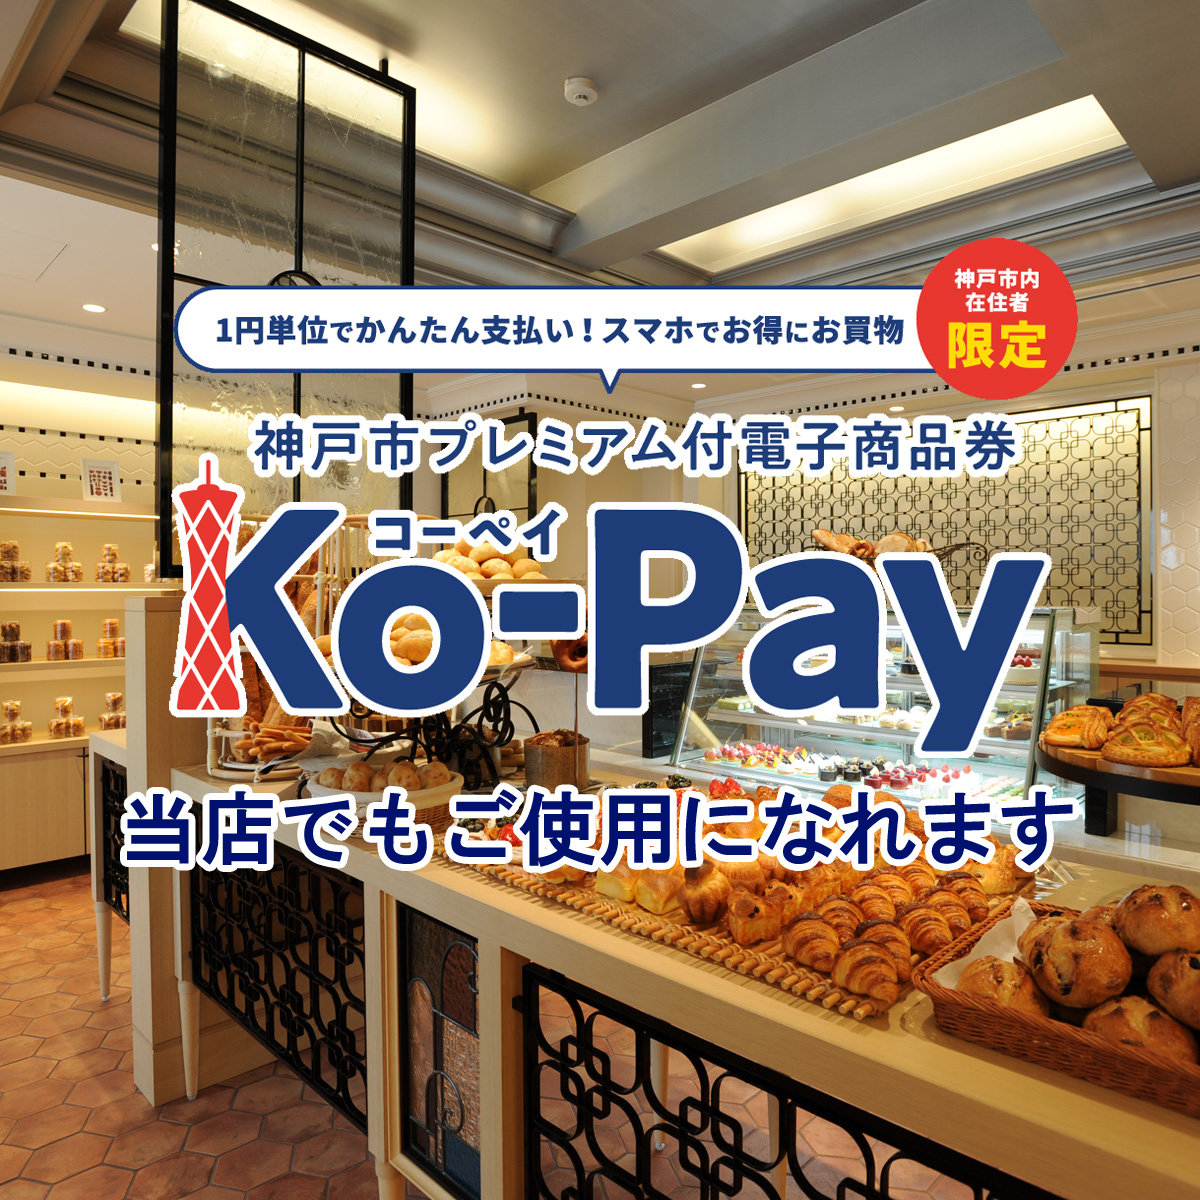 神戸市プレミアム付電子商品券「Ko-Pay」をル・パンでもご使用になれますサムネイル